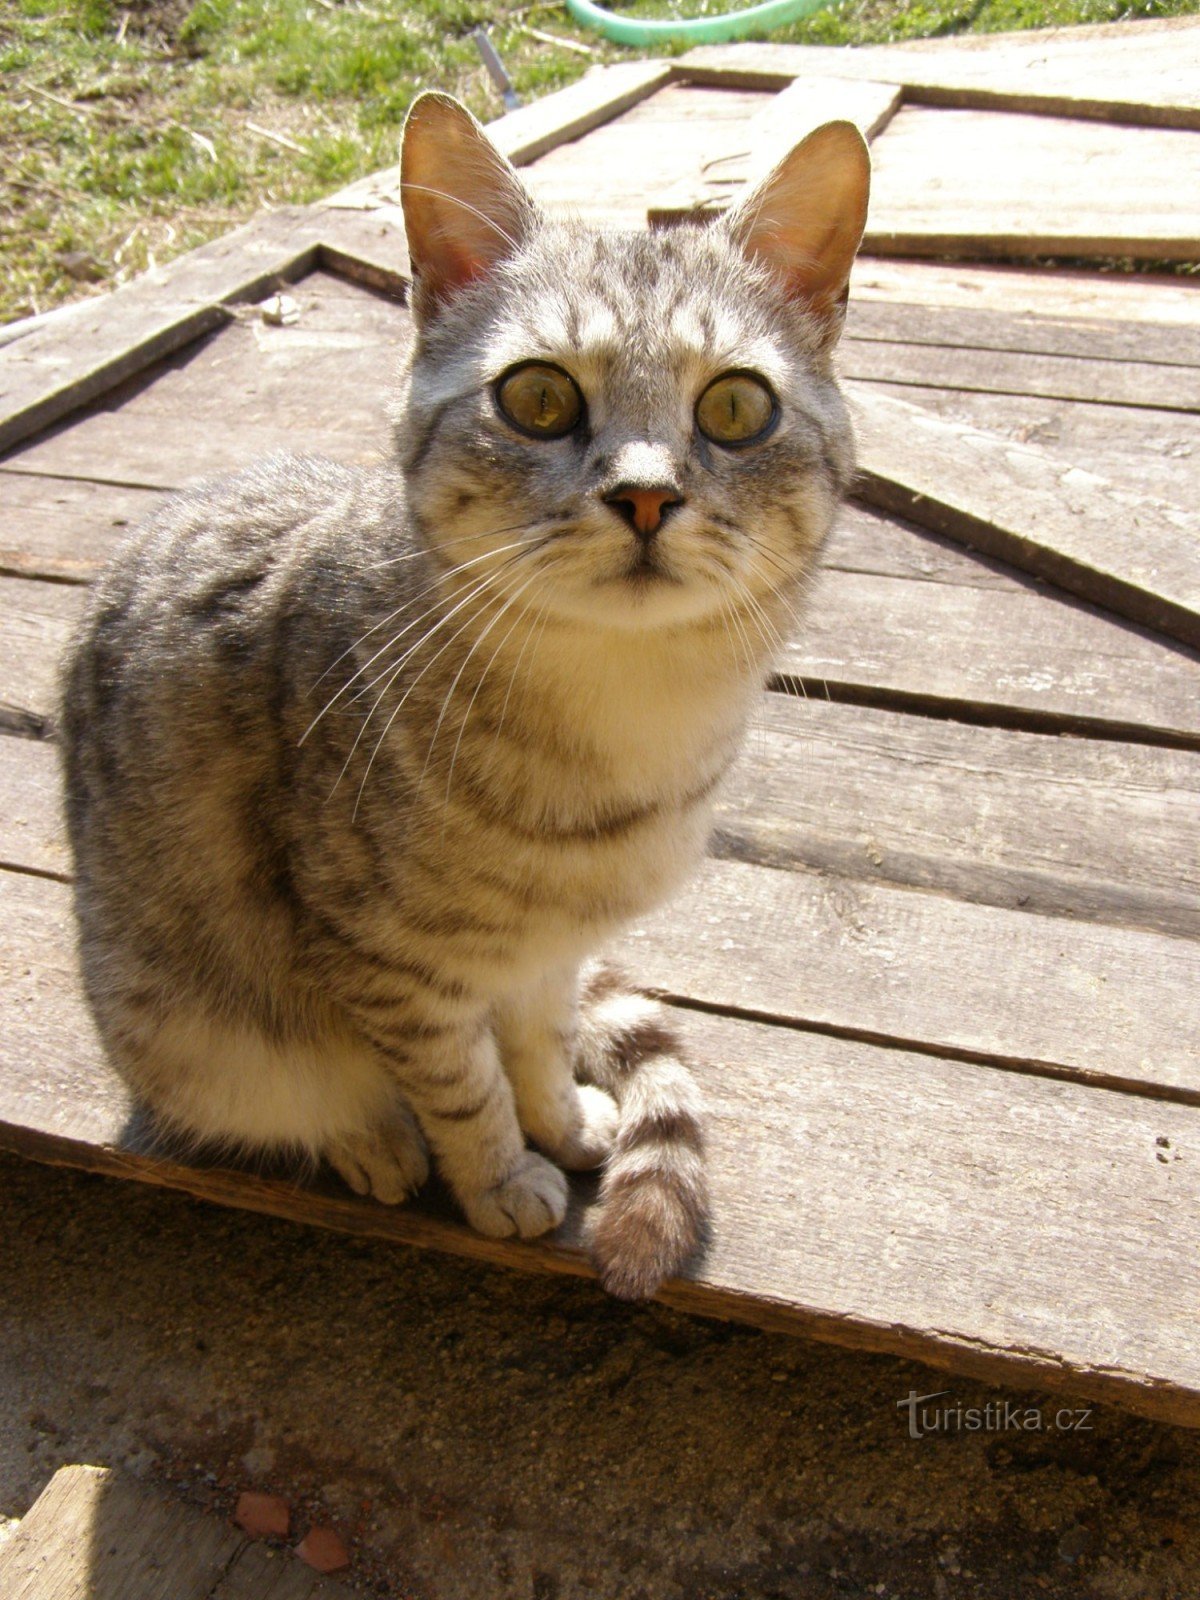 Chú mèo xoăn Cipka từ trang trại dê Nová Víska